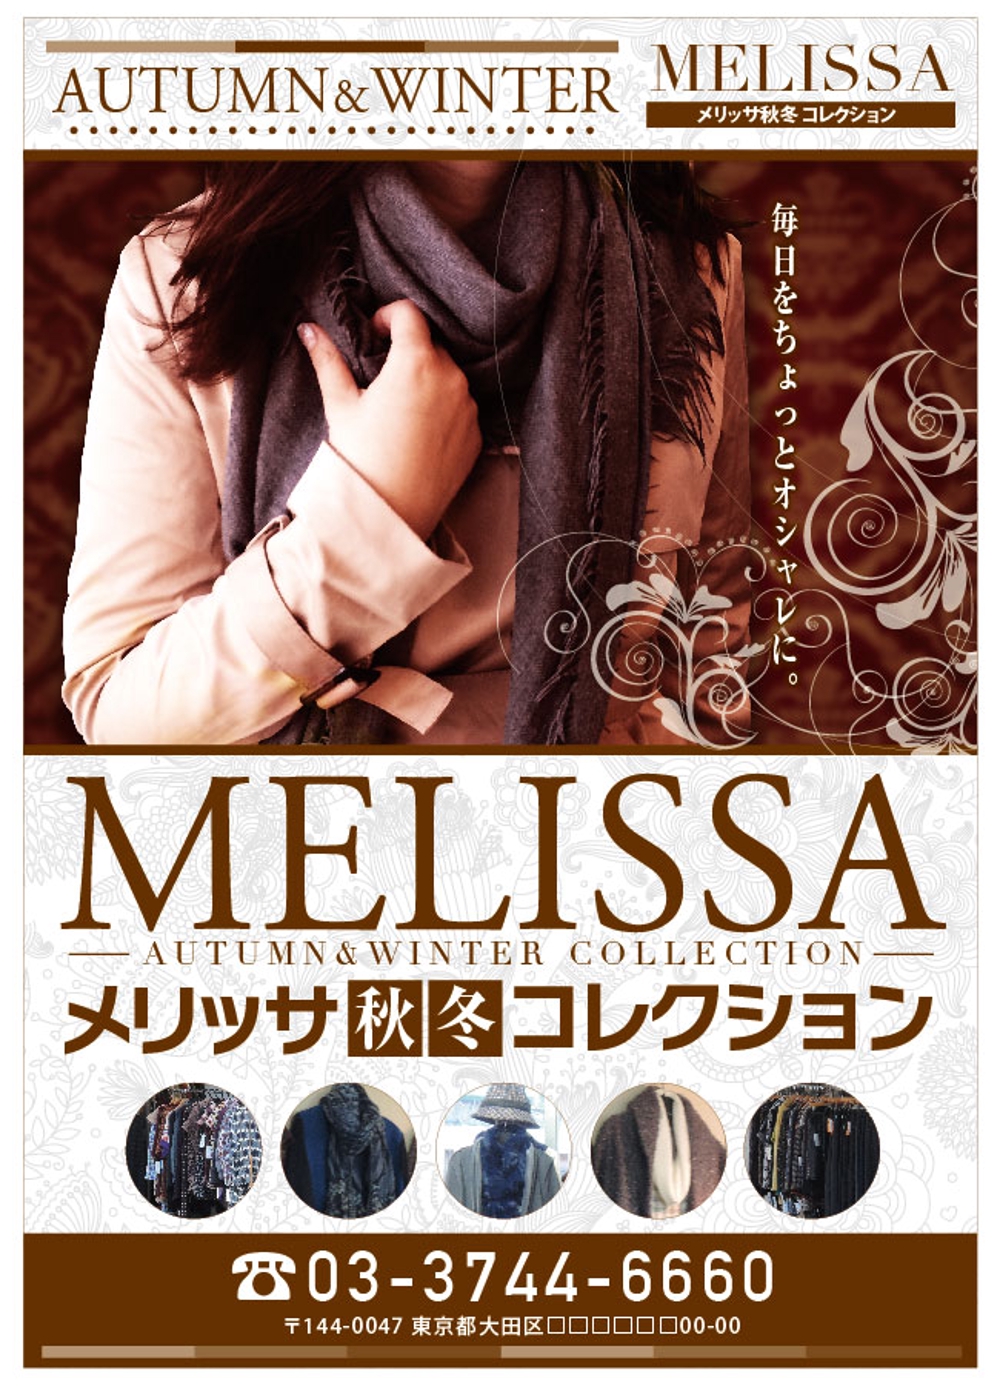 レディスのアパレルブティック「MELISSA」の秋冬用のポスターデザインの制作